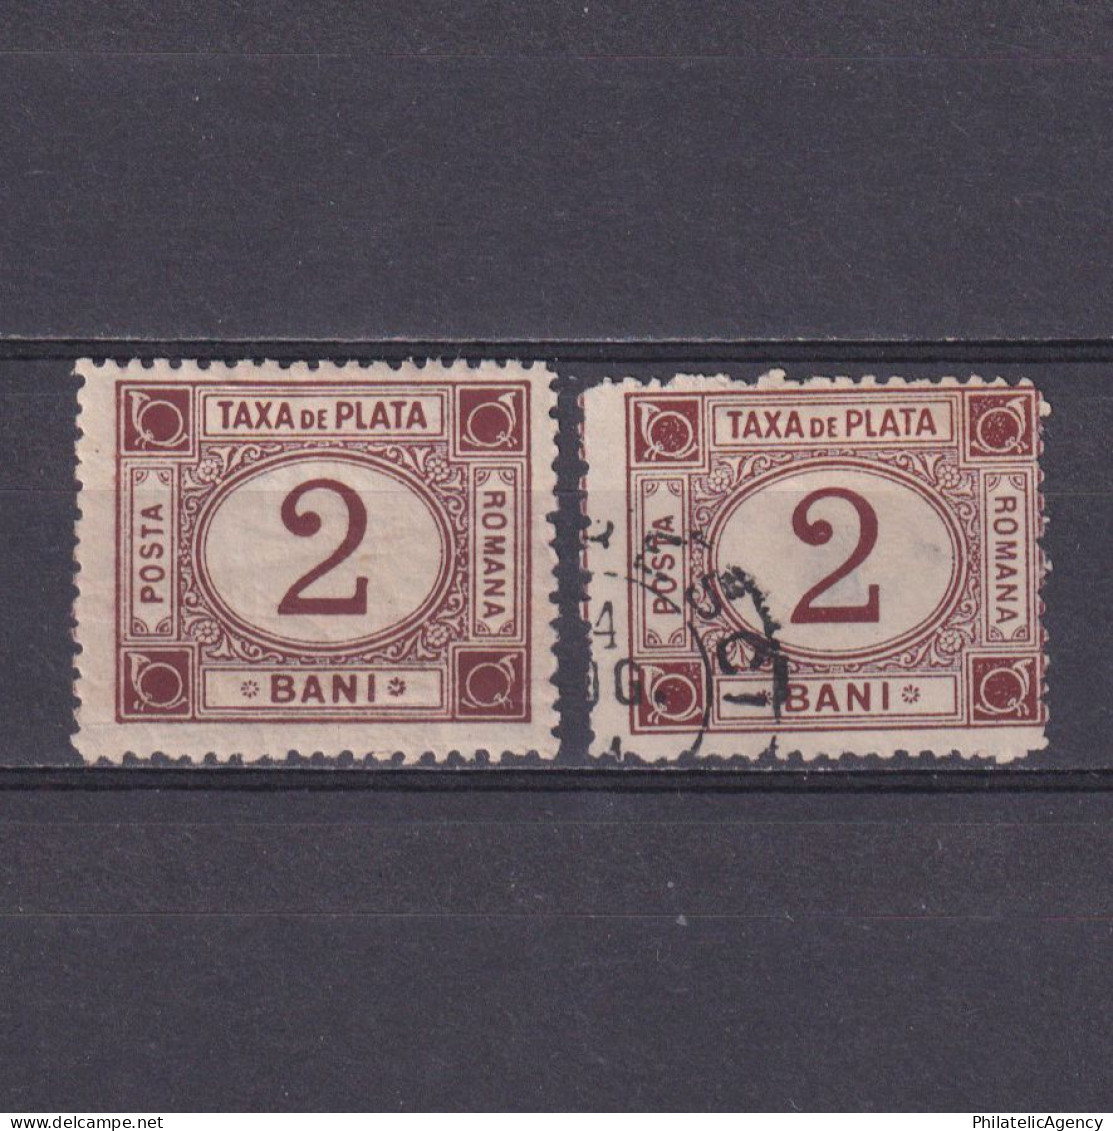 ROMANIA 1881, Sc# J1, Postage Due, MH/Used - Segnatasse